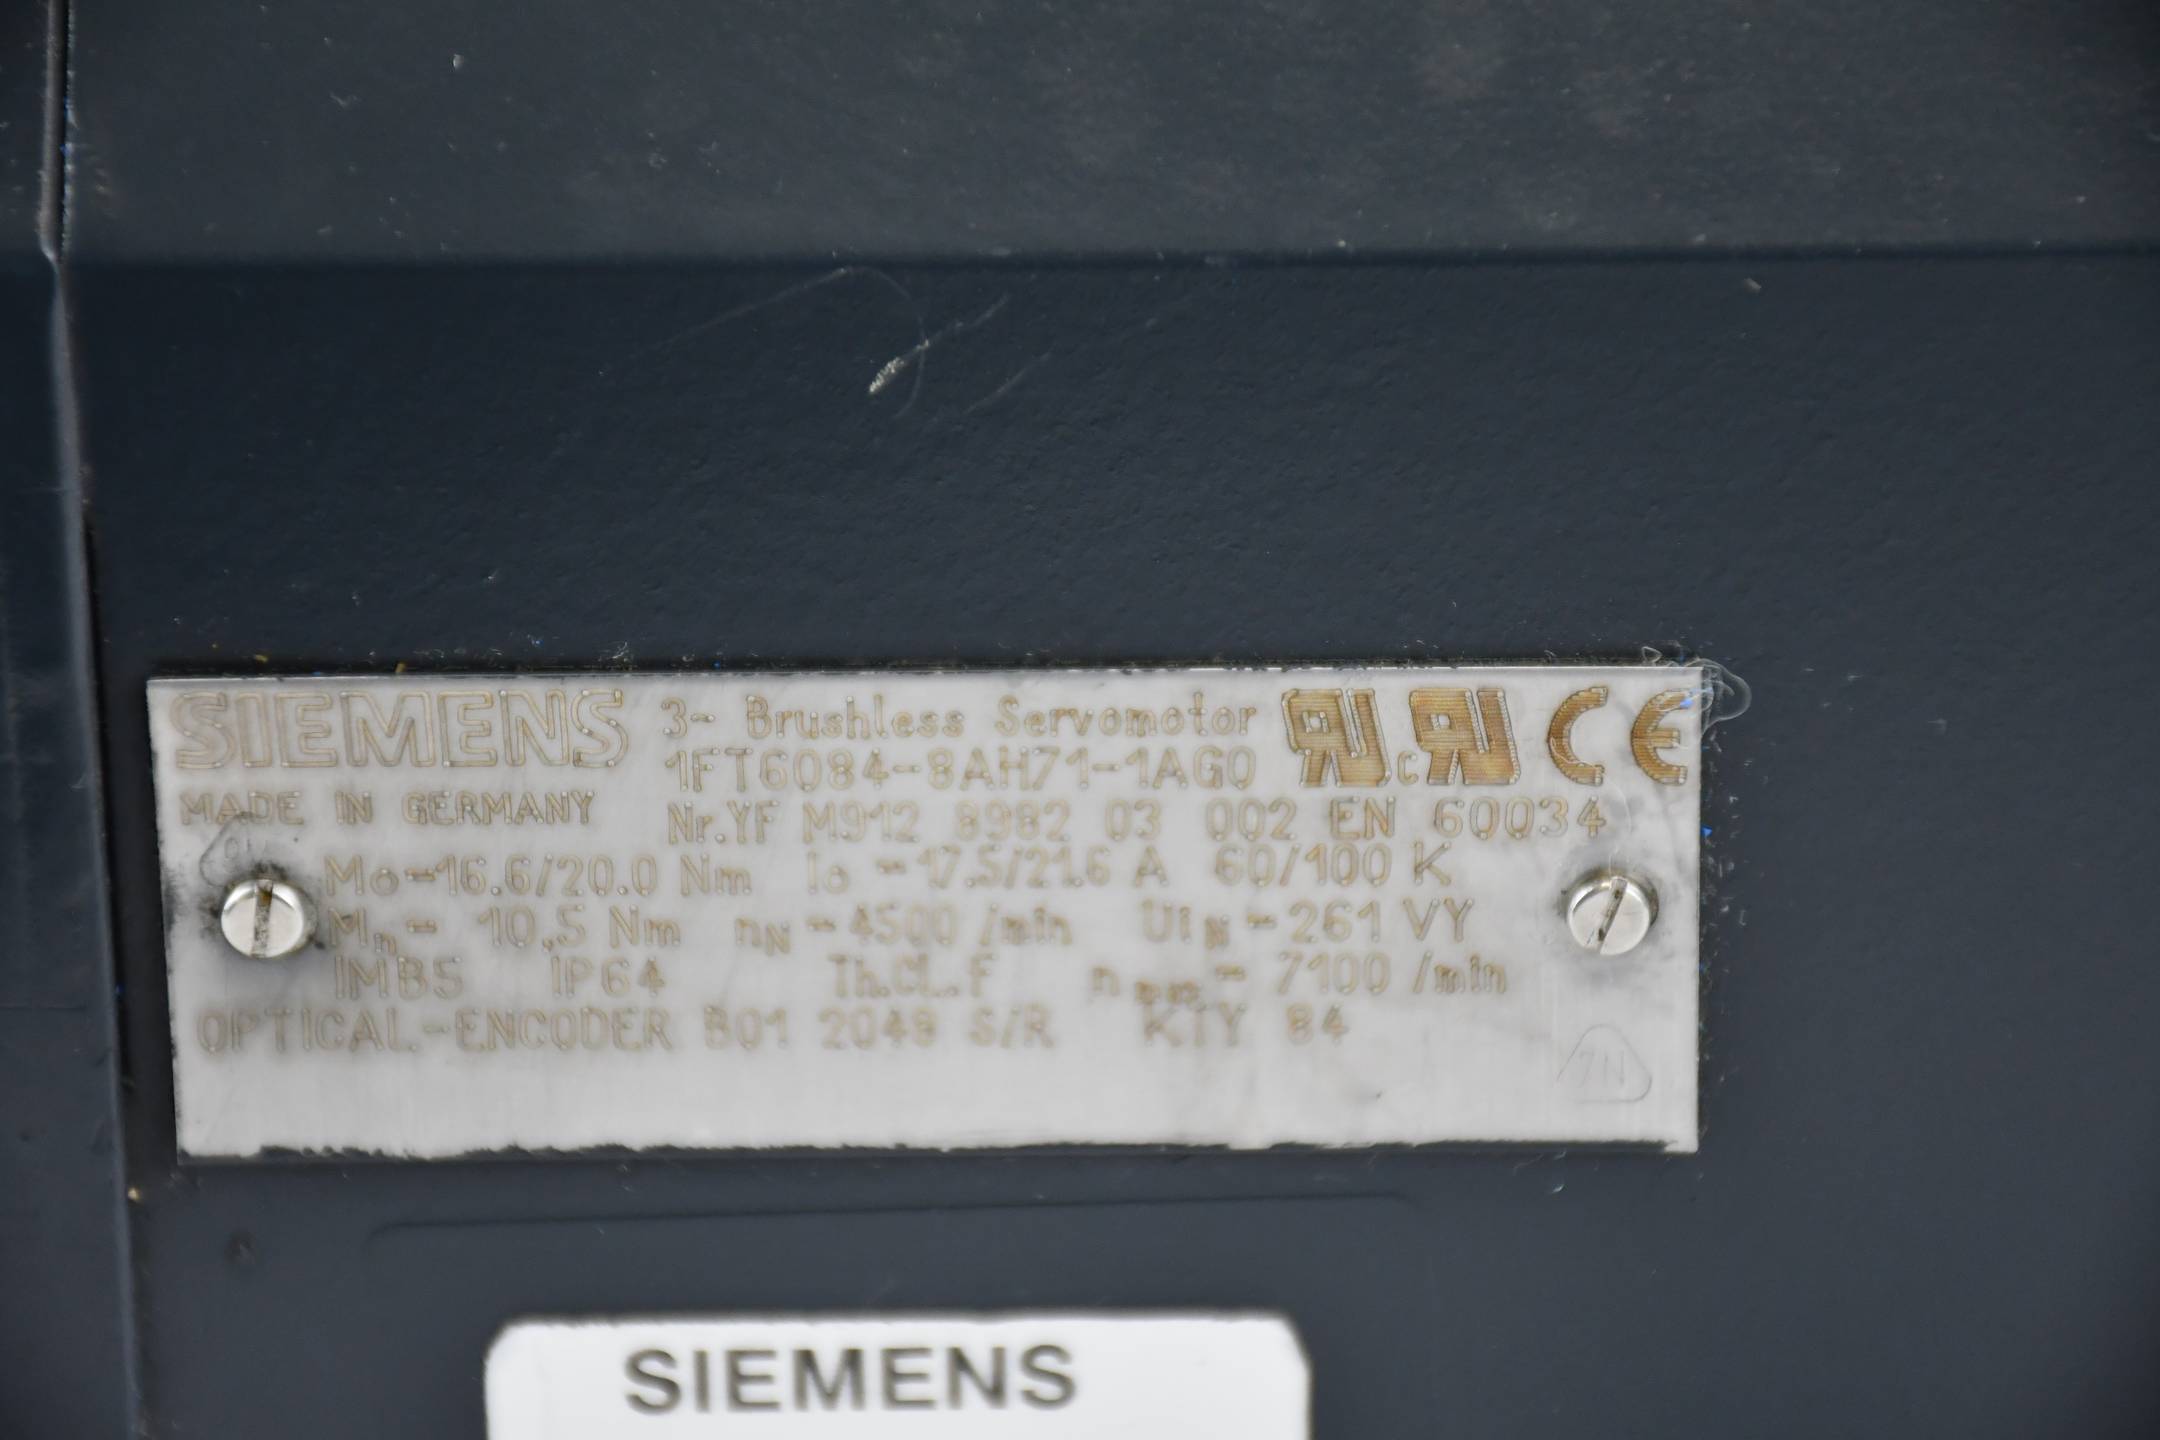 Siemens simotics S Synchronmotor 1FT6084-8AH71-1AG0 ( 1FT6 084-8AH71-1AG0 )